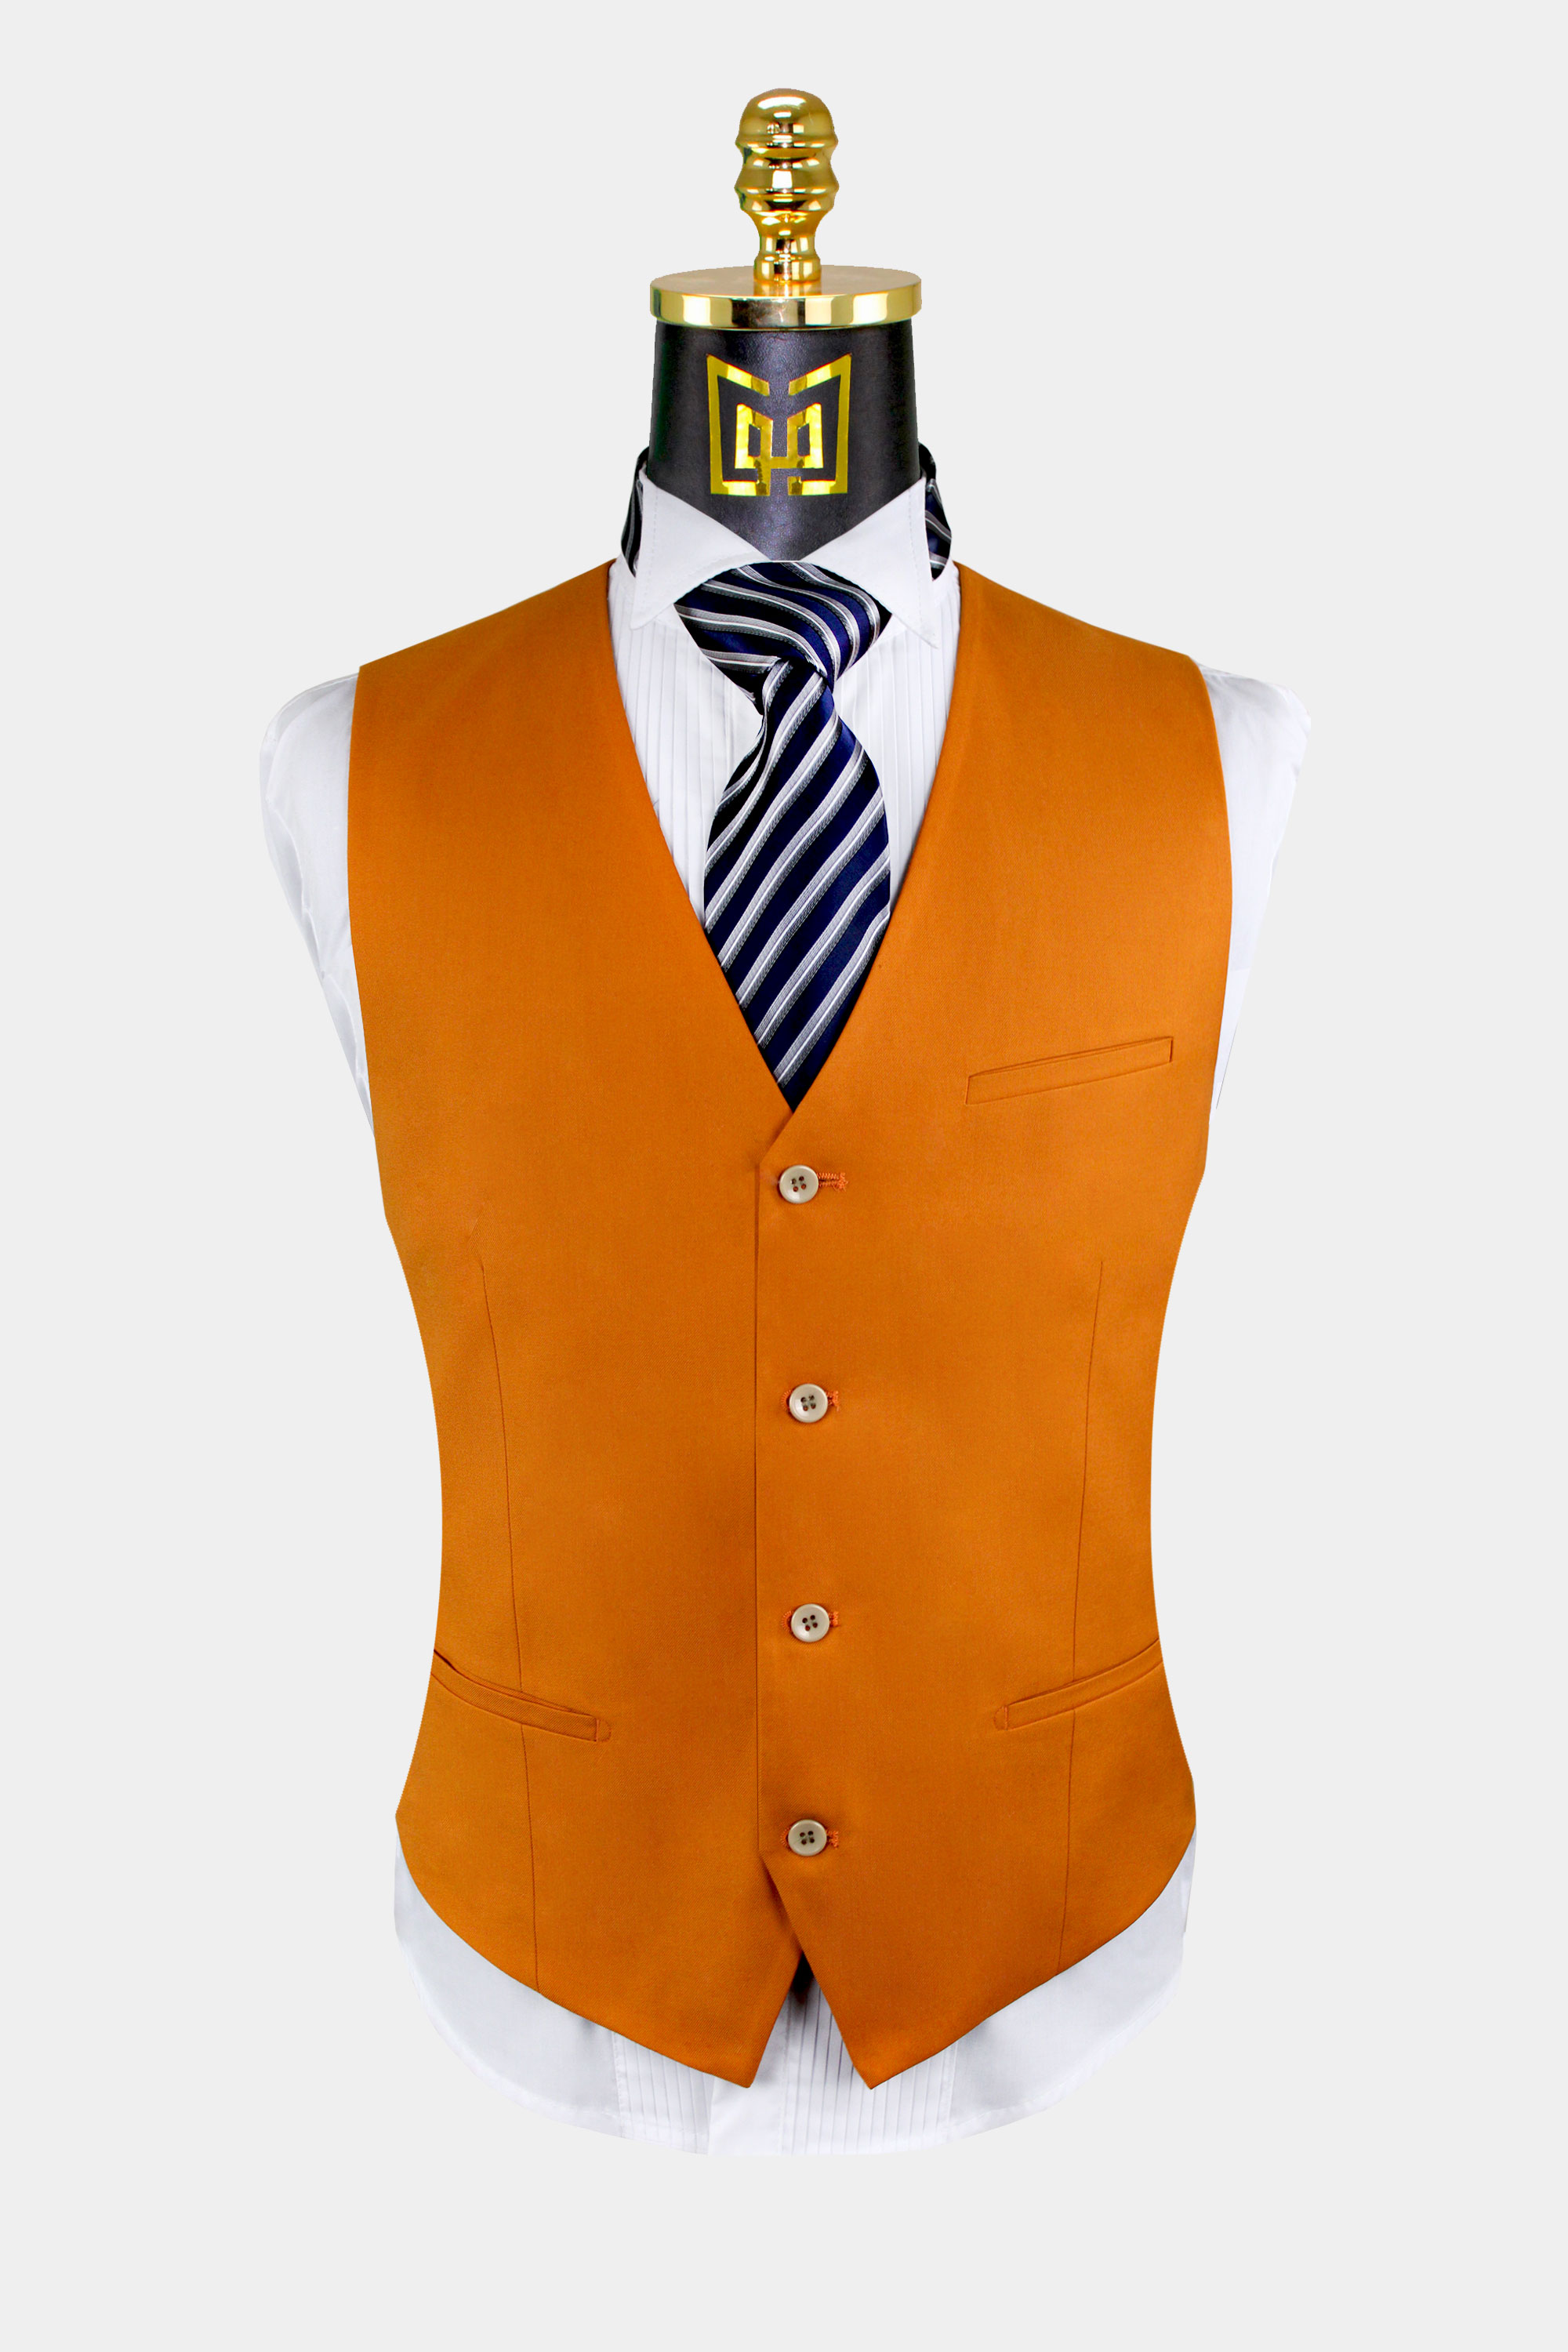 https://www.gentlemansguru.com/wp-content/uploads/2020/06/Burnt-Orange-Suit-Vest-from-Gentlemansguru.com_.jpg